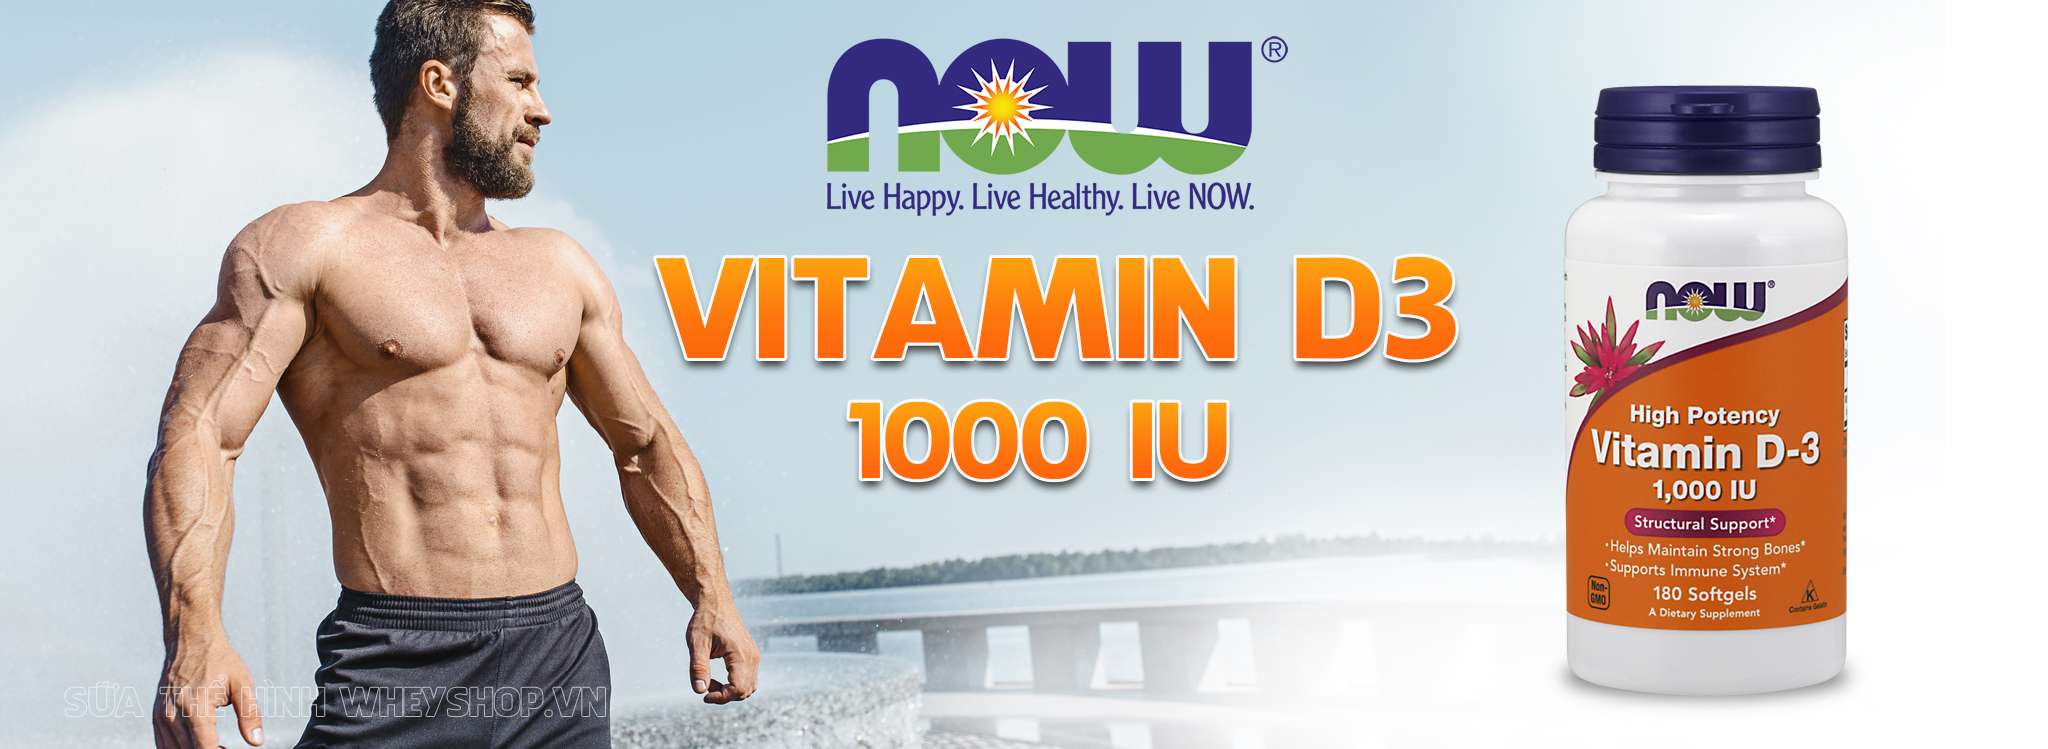 Now Vitamin D3 1000IU bổ sung Vitamin D3, hỗ trợ cải thiện sức khỏe, sức đề kháng, xương khớp. Now Vitamin D3 nhập khẩu chính hãng, giá tốt nhất thị trường